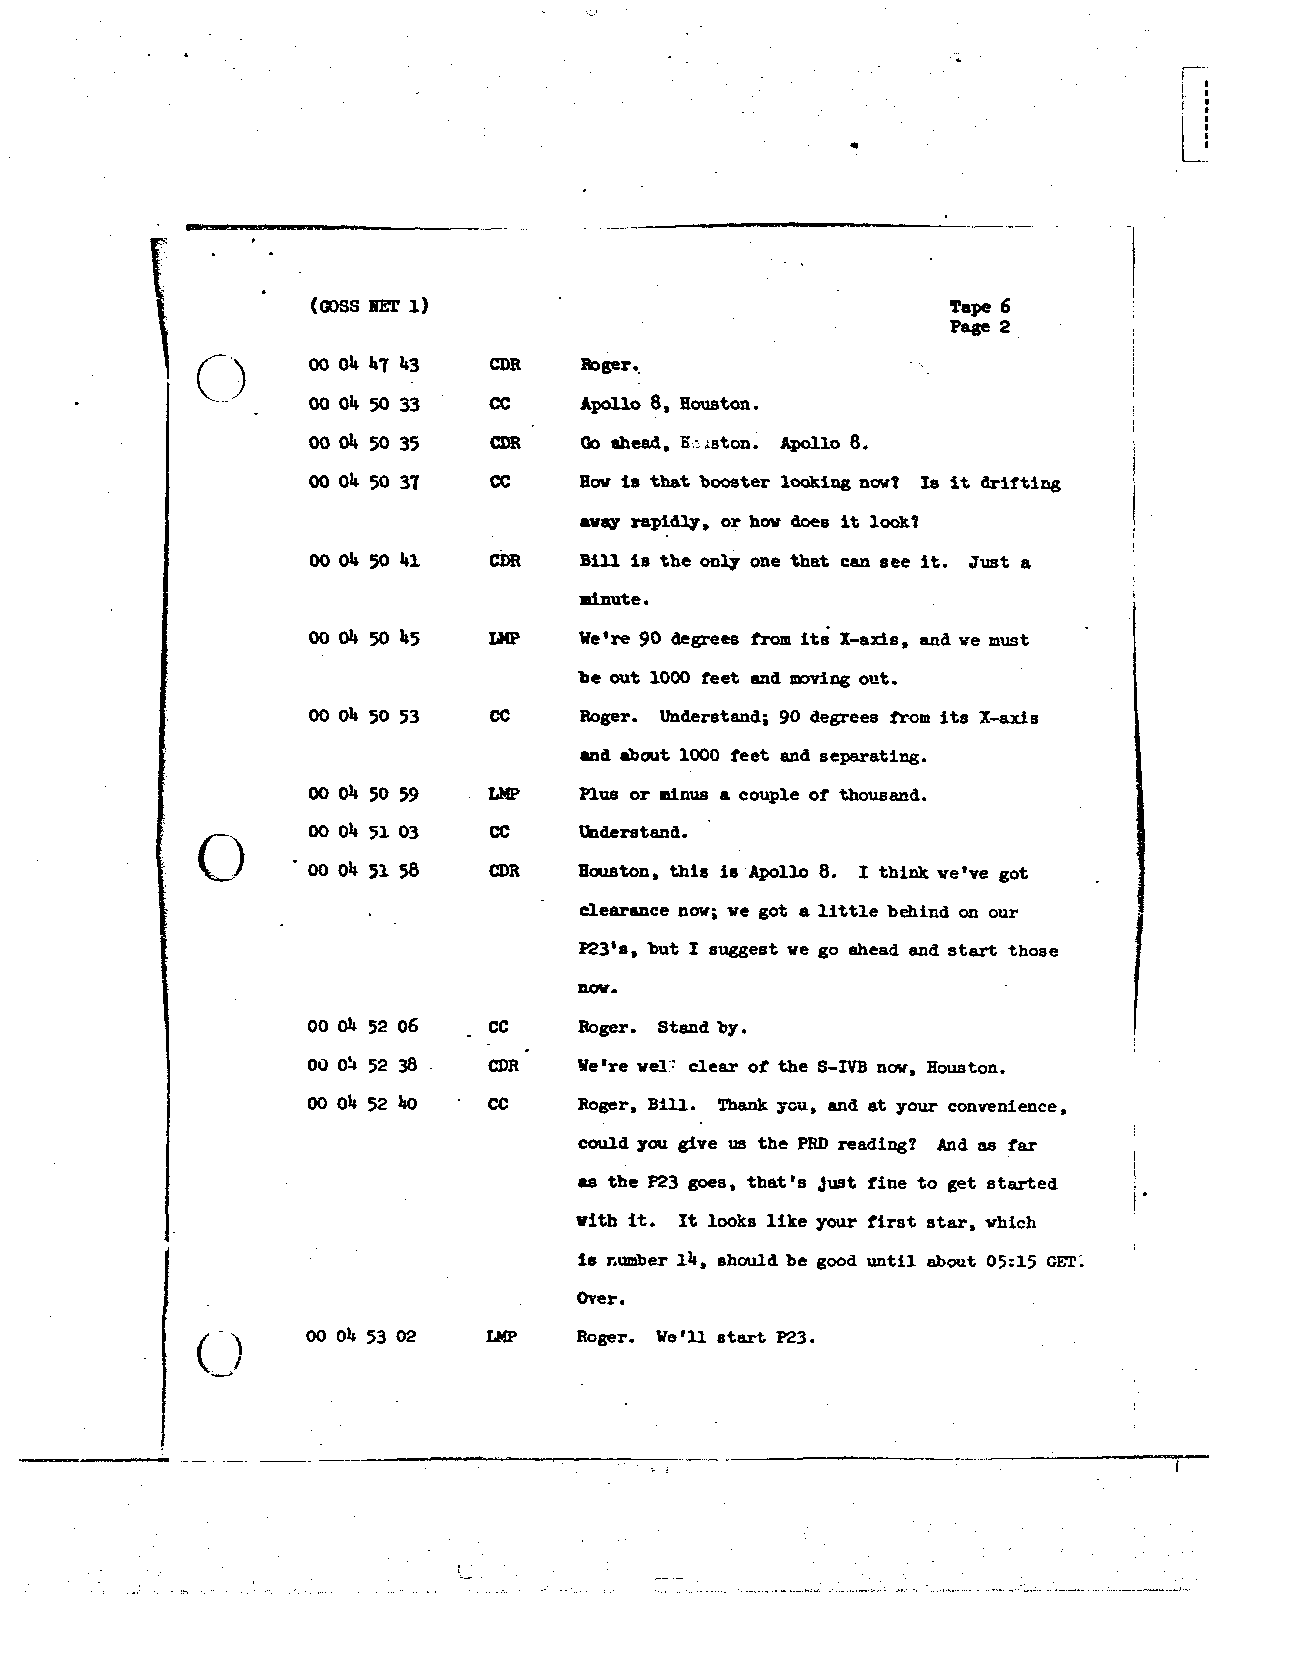 Page 48 of Apollo 8’s original transcript